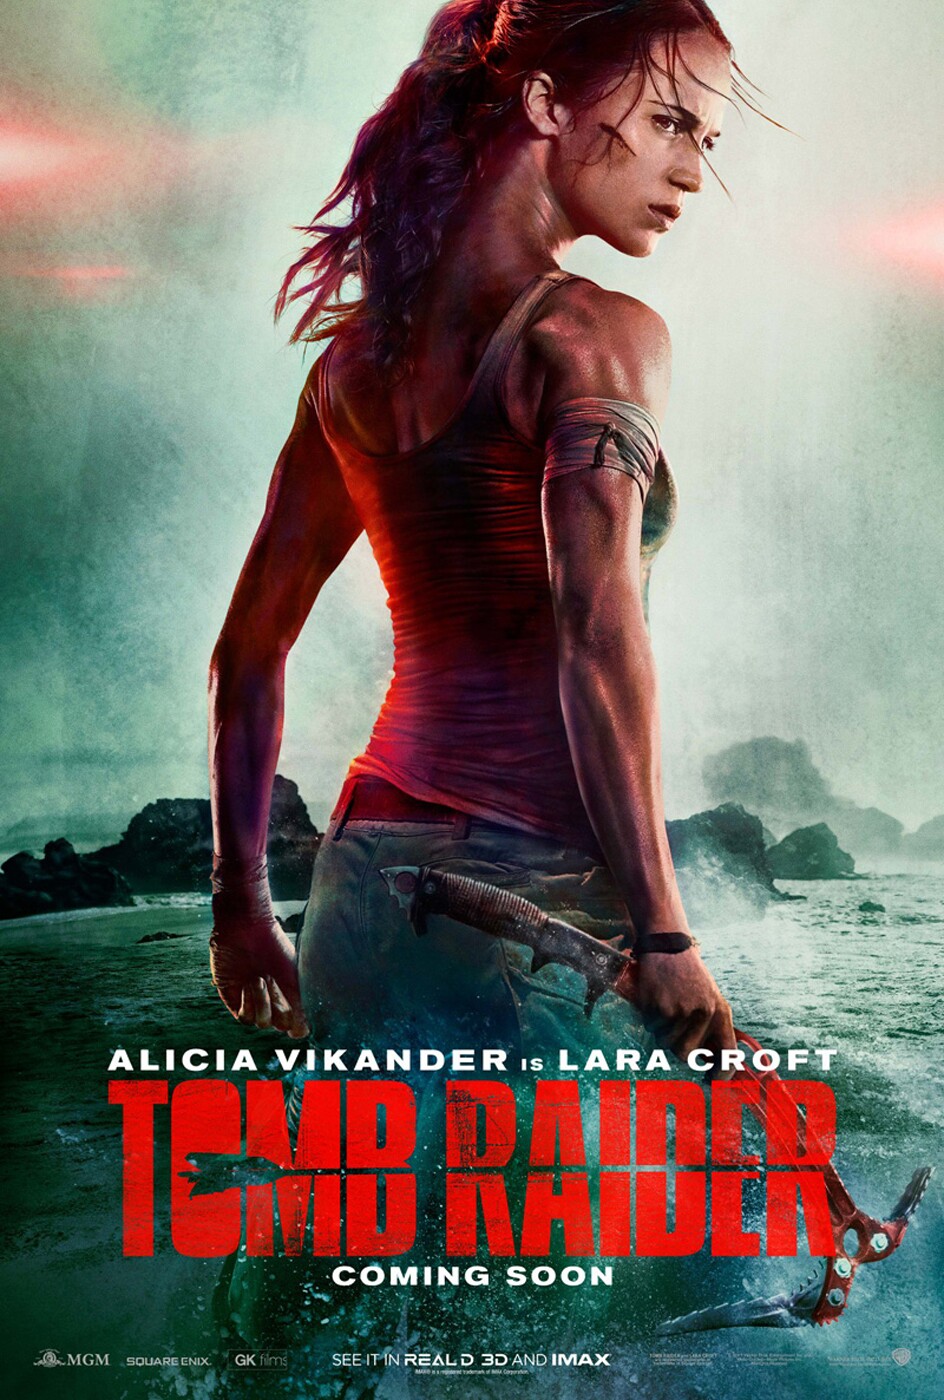 Das erste Poster zum neuen Tomb Raider-Film.